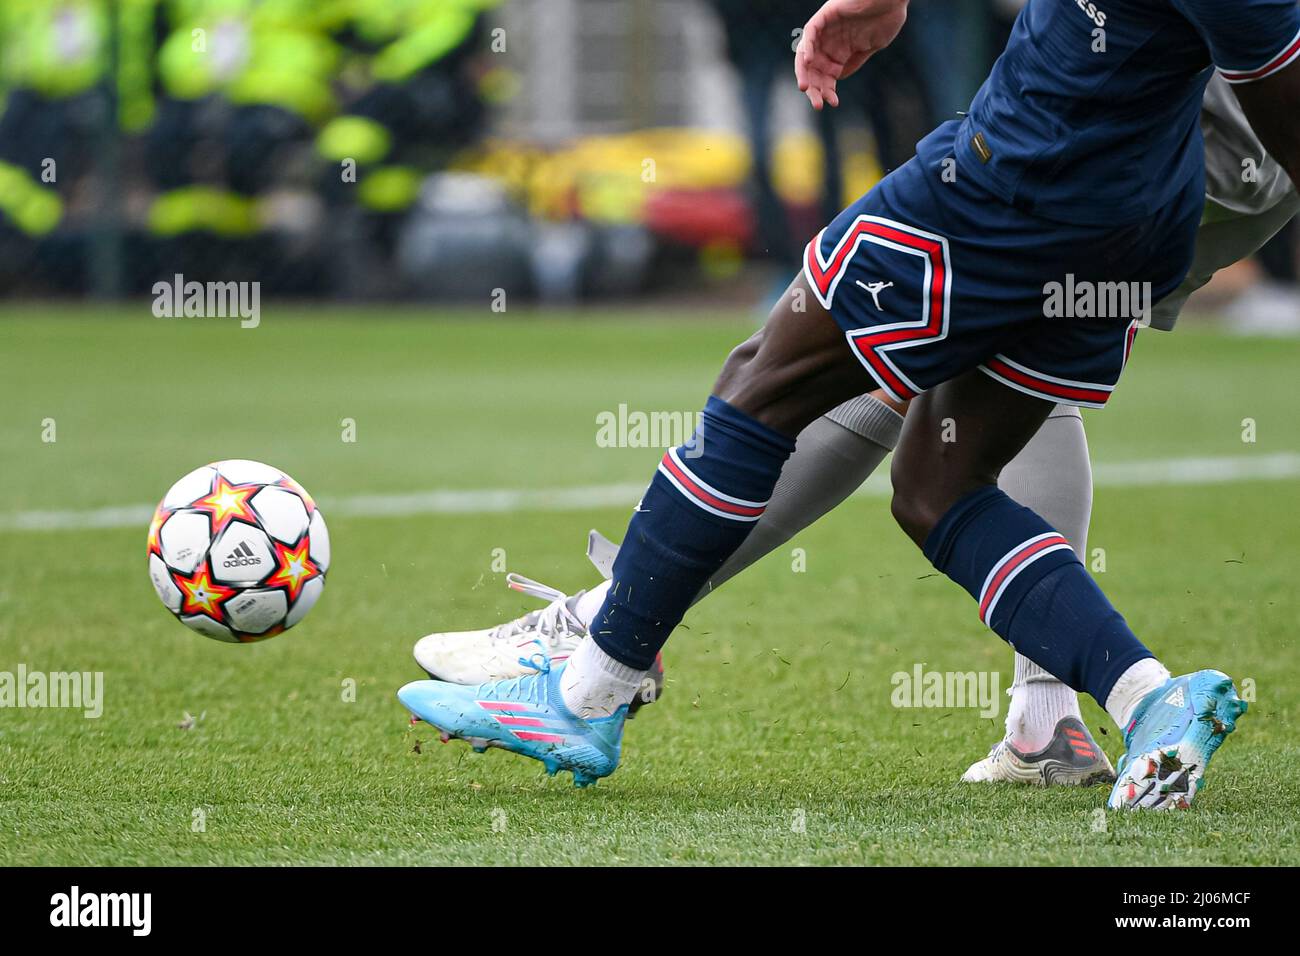 Die Abbildung zeigt den offiziellen Adidas-Ball zu Füßen eines Spielers während der UEFA Youth League (U19), dem Viertelfinale-Fußballspiel zwischen Paris Saint-Germain (PSG) und RB Salzburg (FC) am 16. März 2022 im Georges Lefevre-Stadion in Saint-Germain-en-Laye, Frankreich - Foto Victor Joly / DPPI Stockfoto